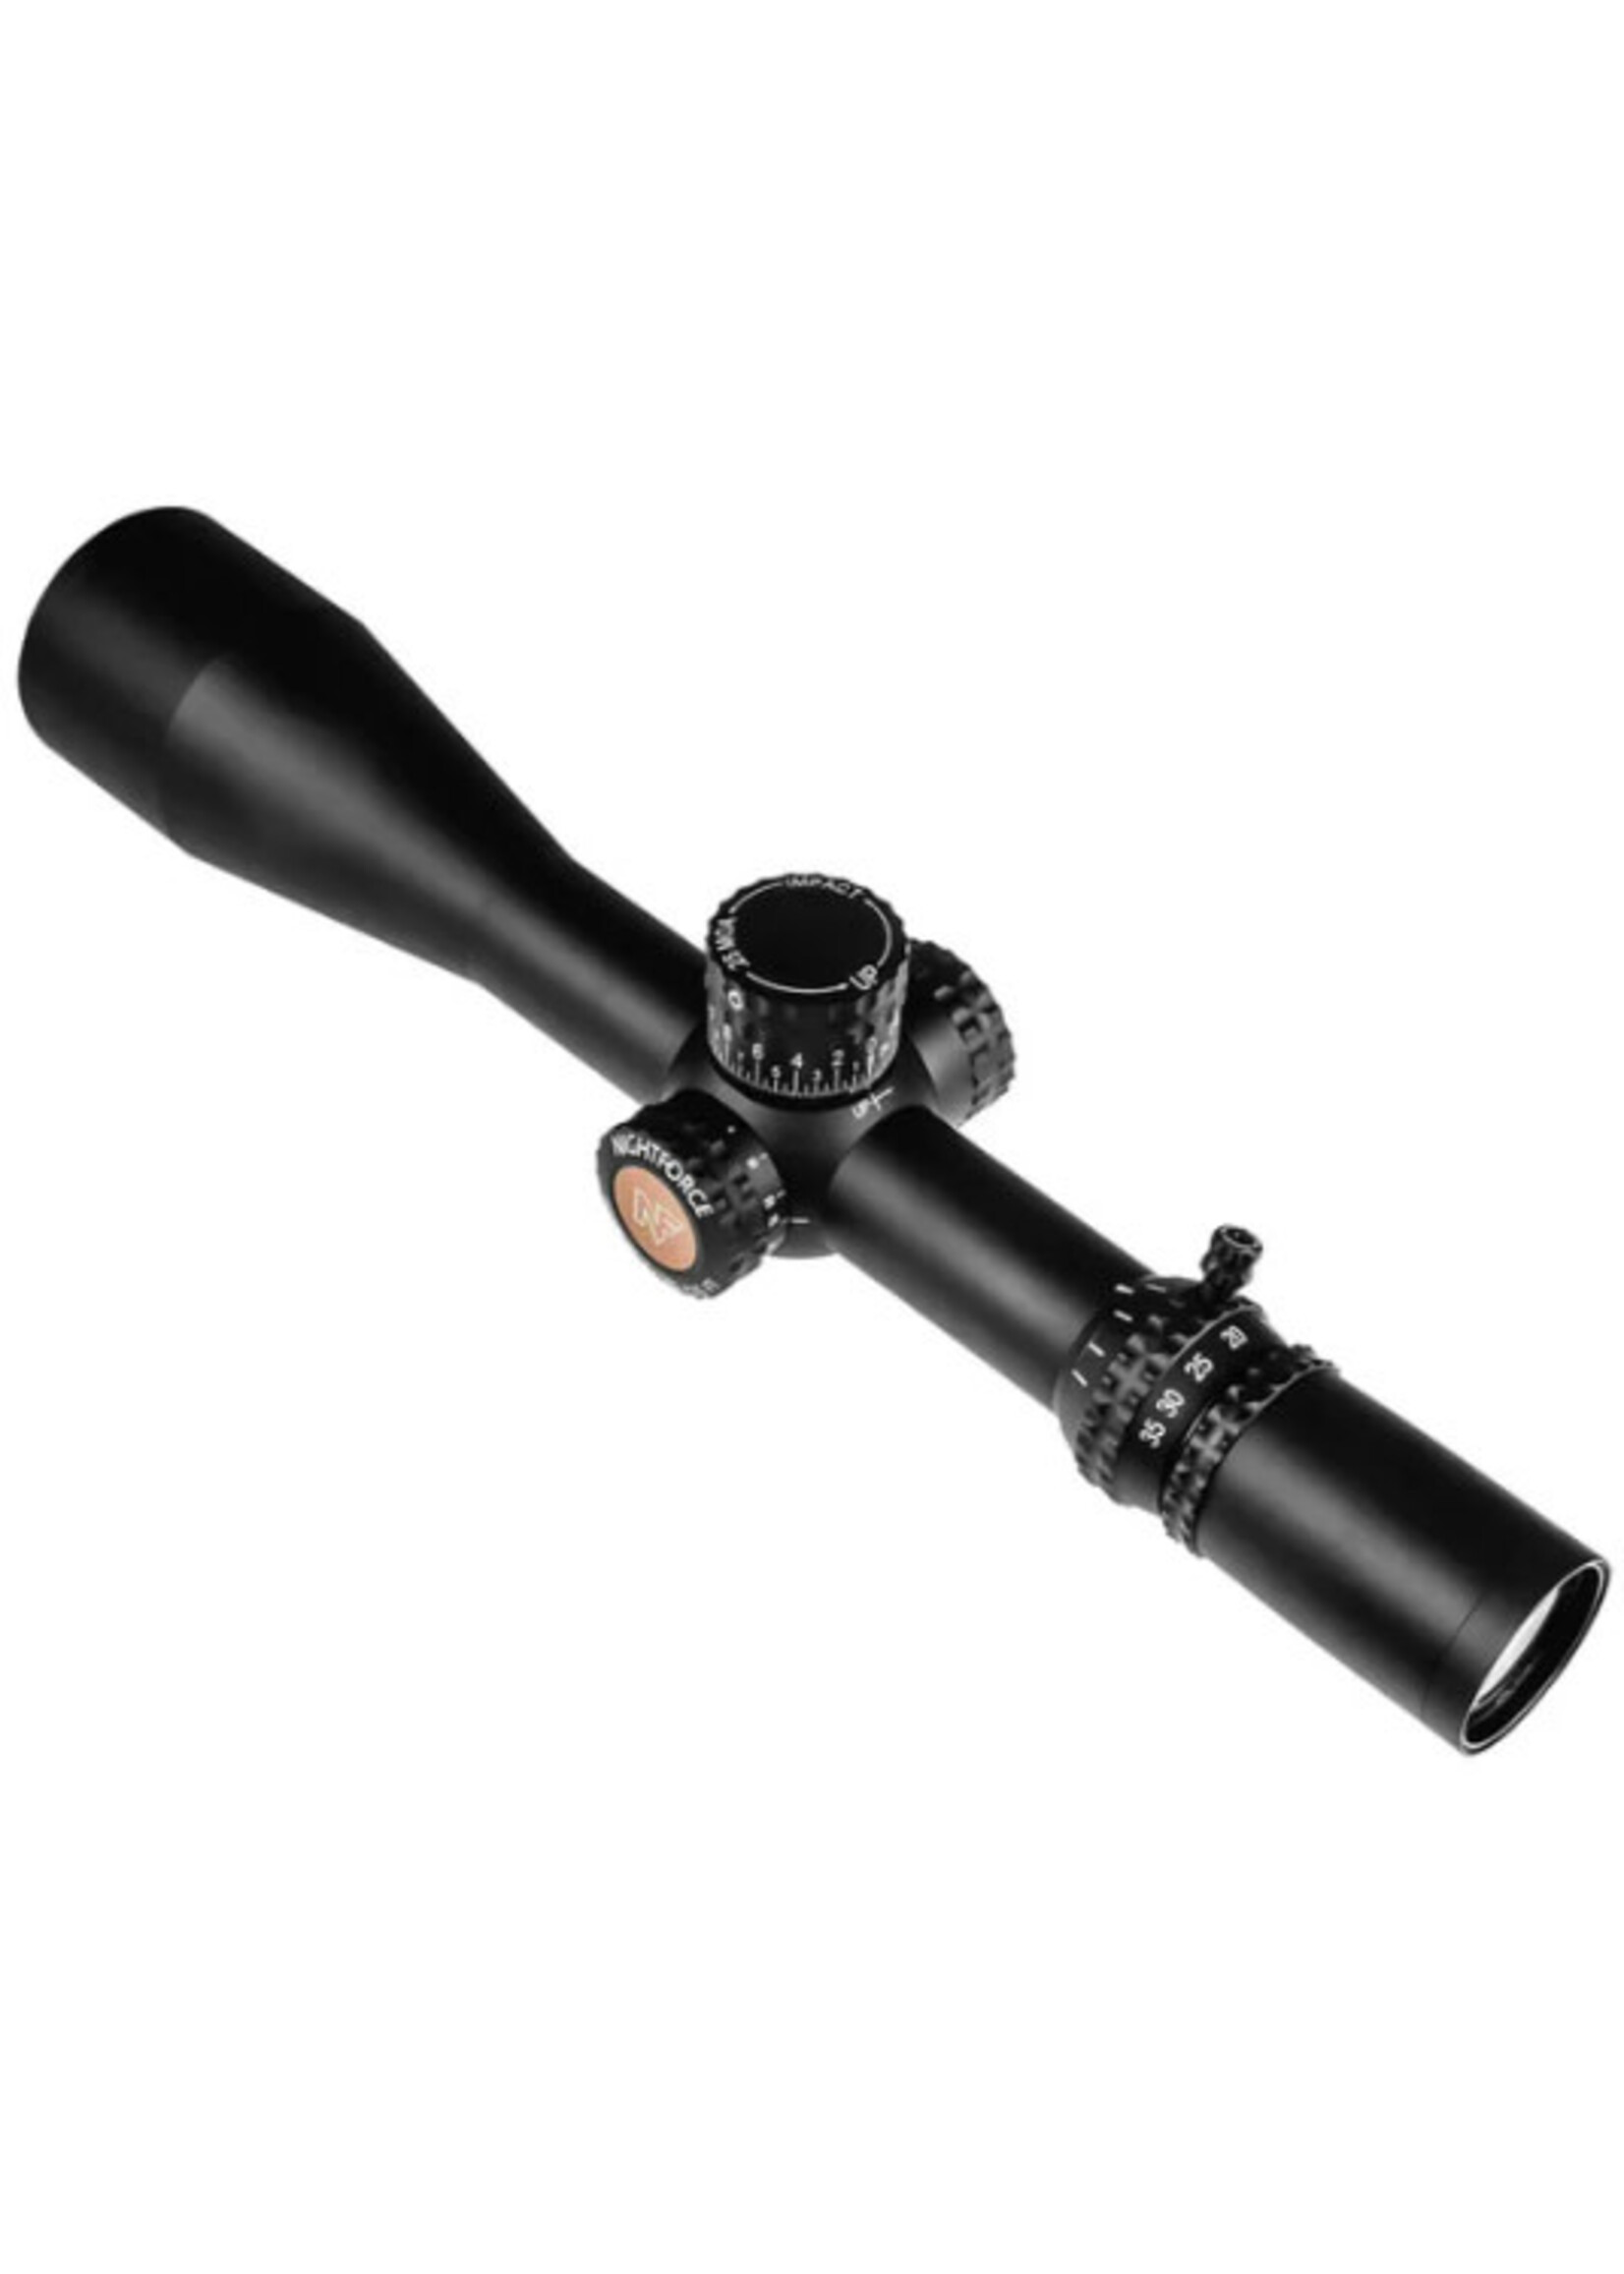 Nightforce Nightforce ATACR 7-35x56mm F1 ZeroStop .1 MRAD Illum PTL TReMoR5 Riflescope C692